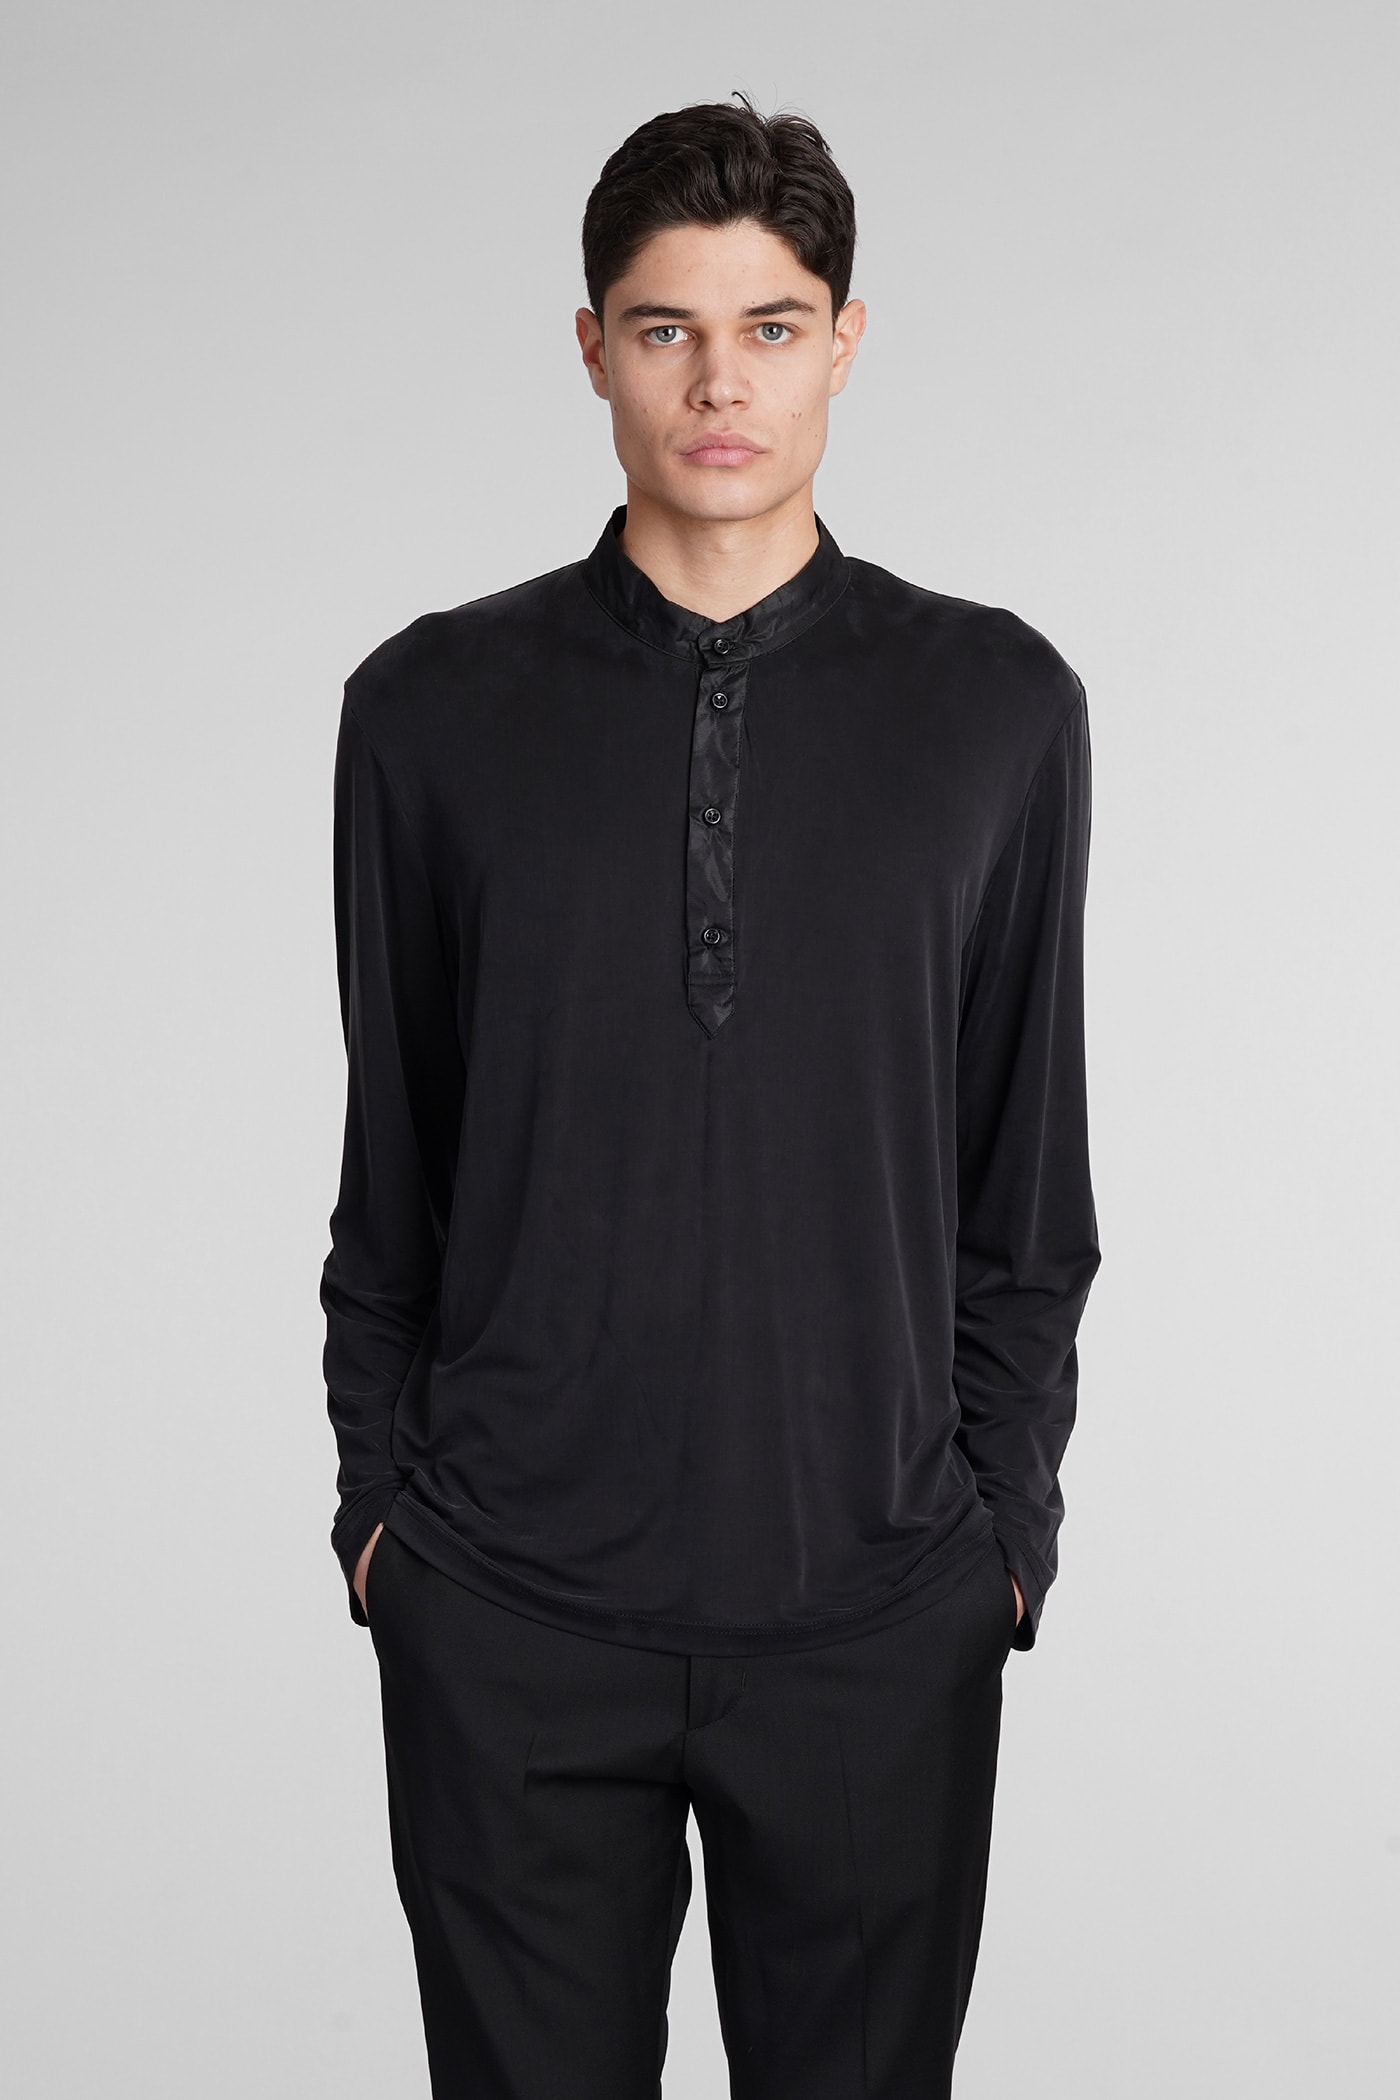 B225 T-shirt In Black Polyamide Polyester